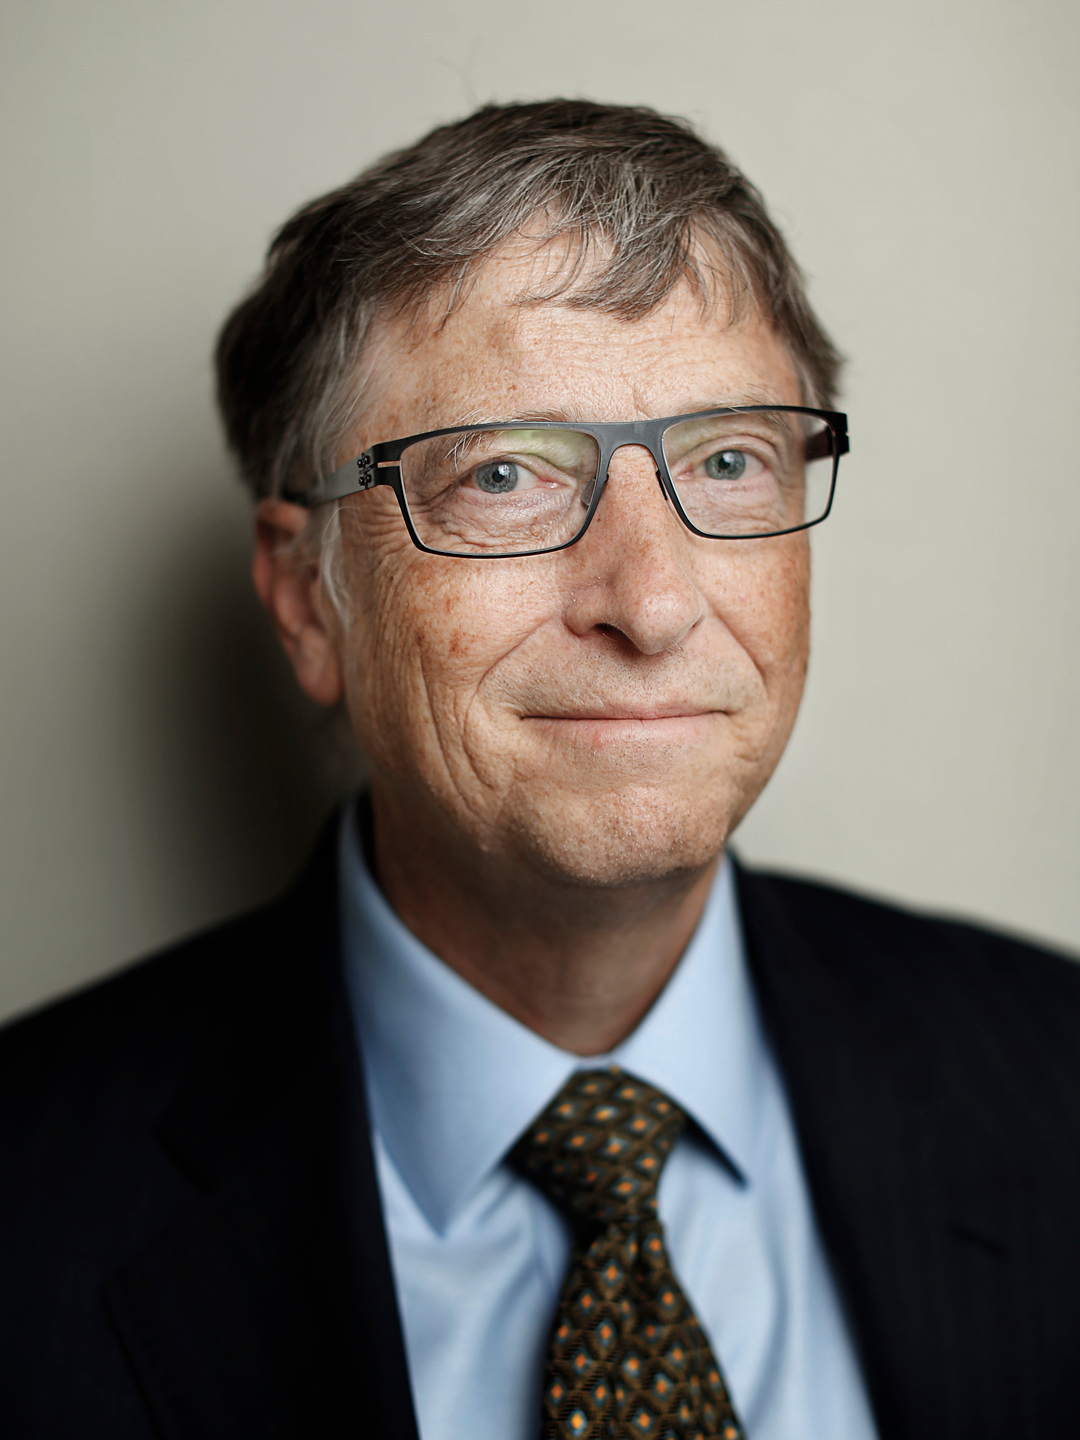 Bill Gates young photos